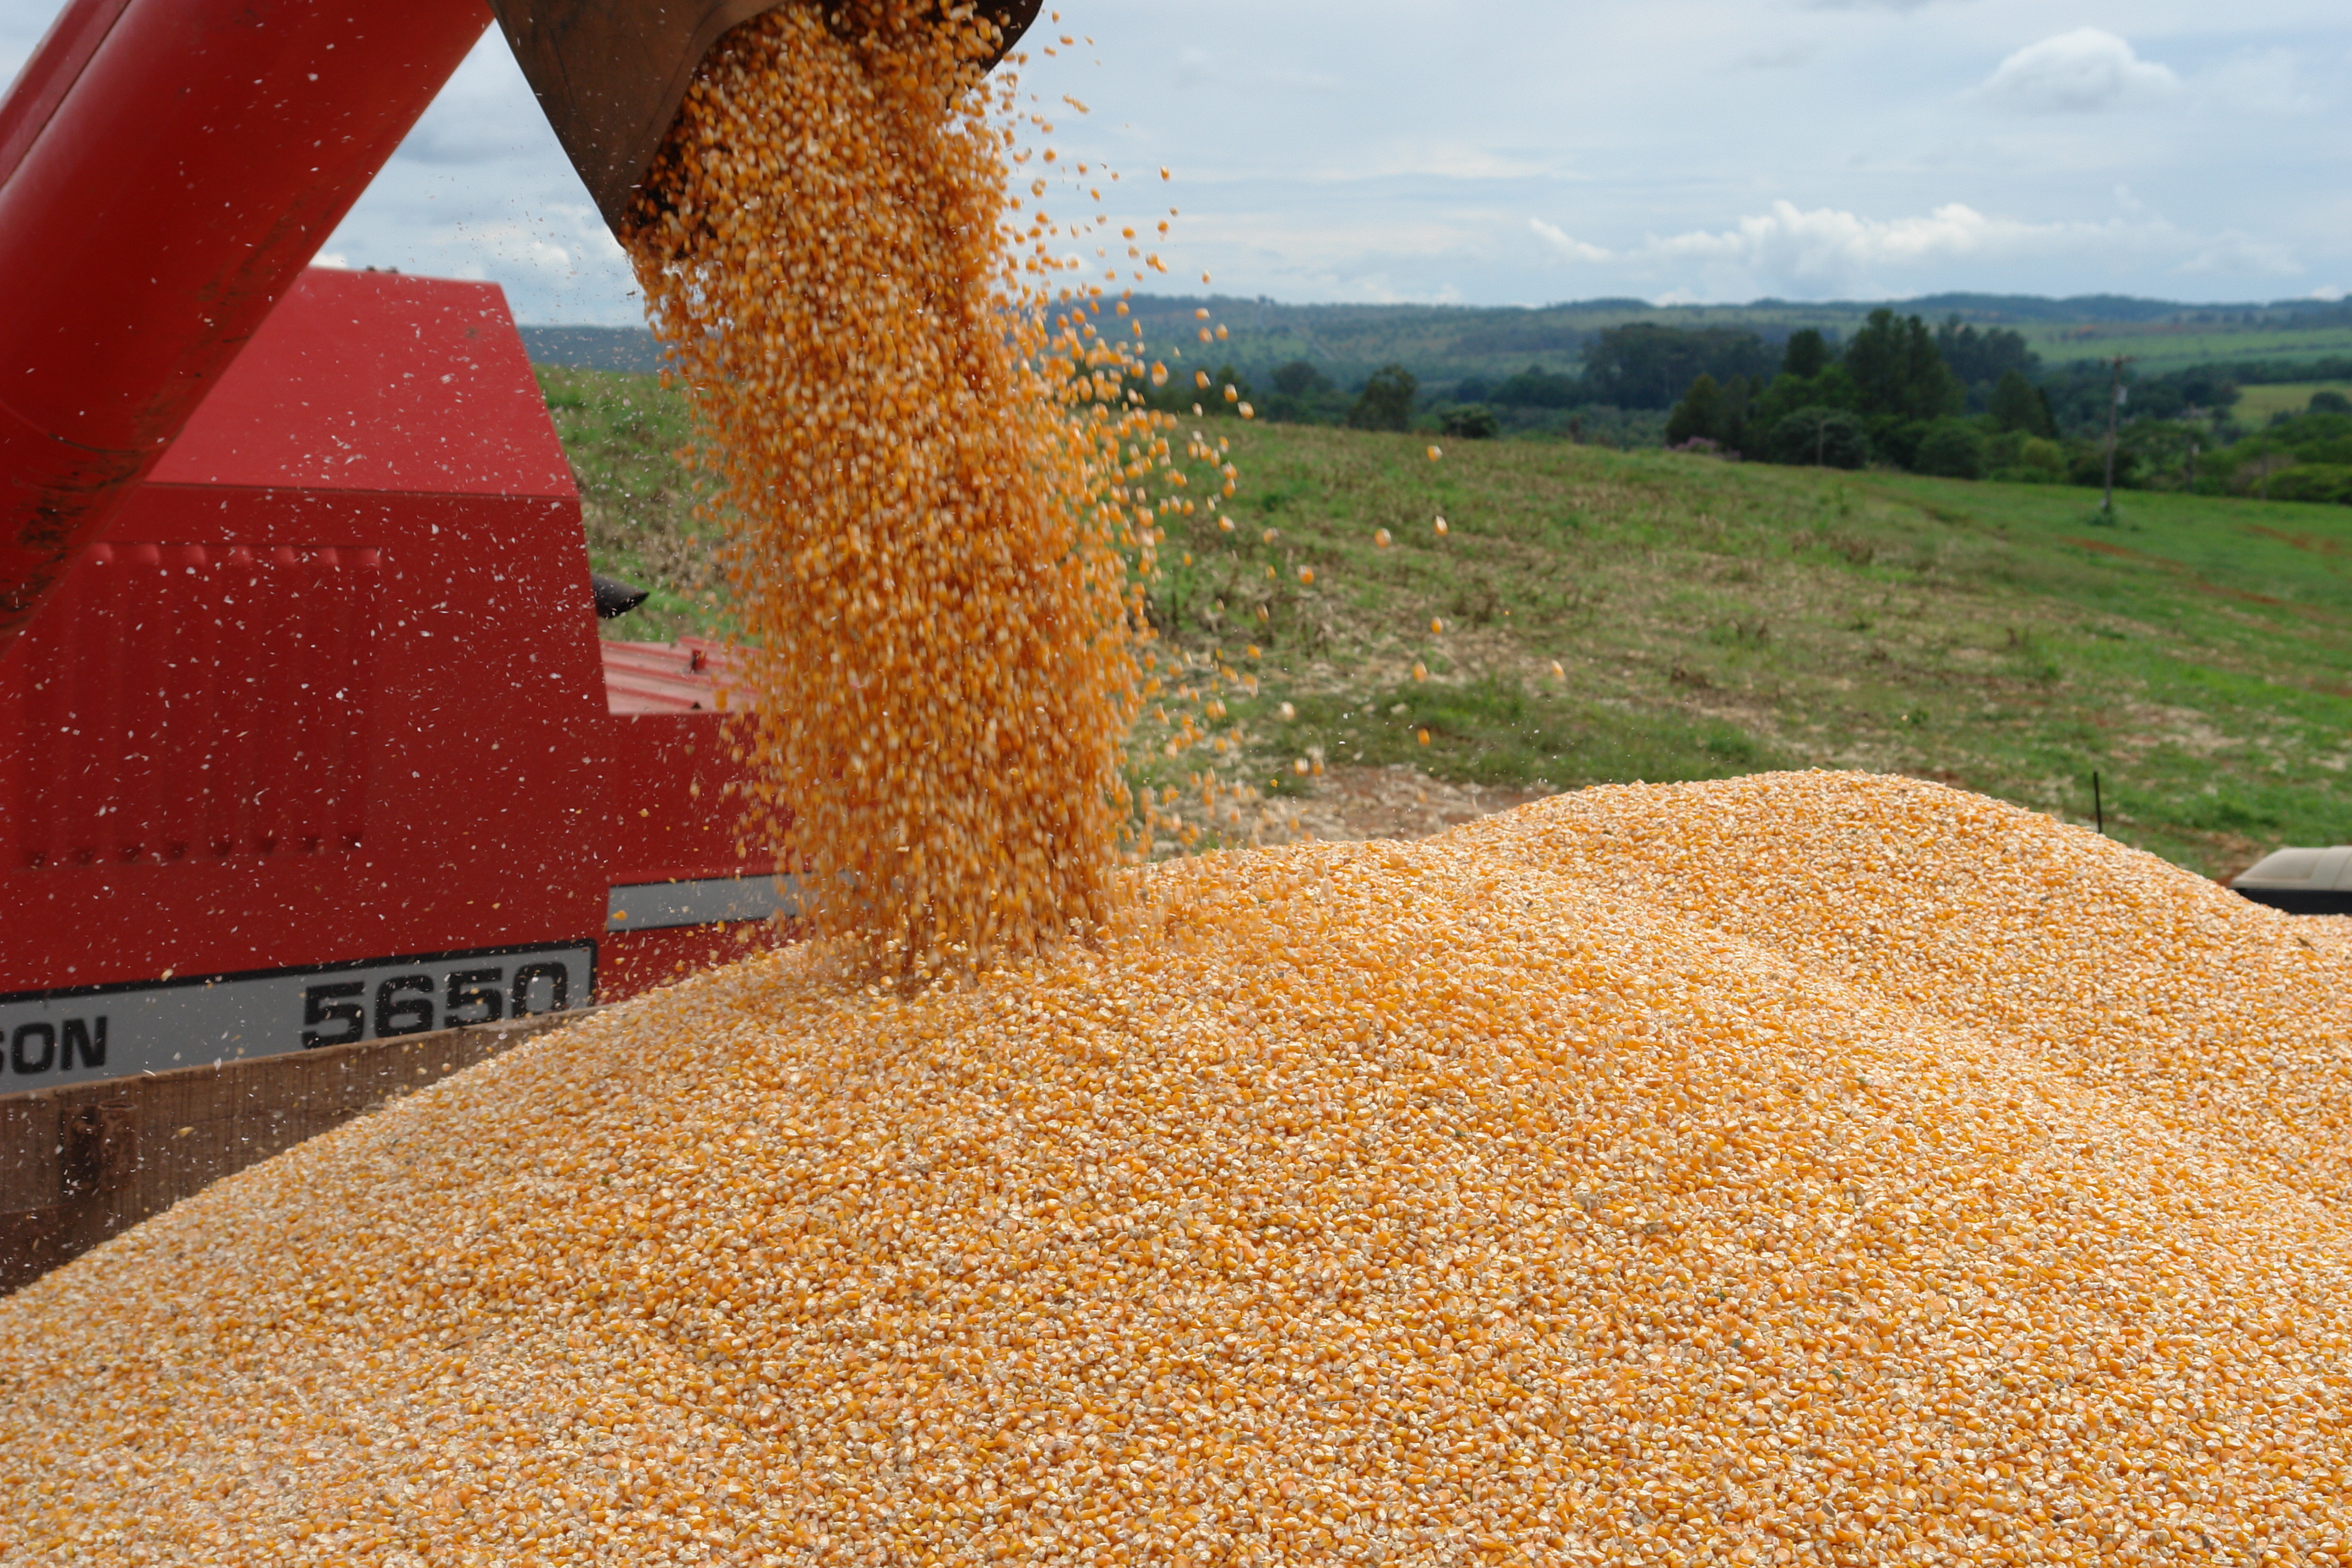  PR apresenta recuperação na produção de grãos